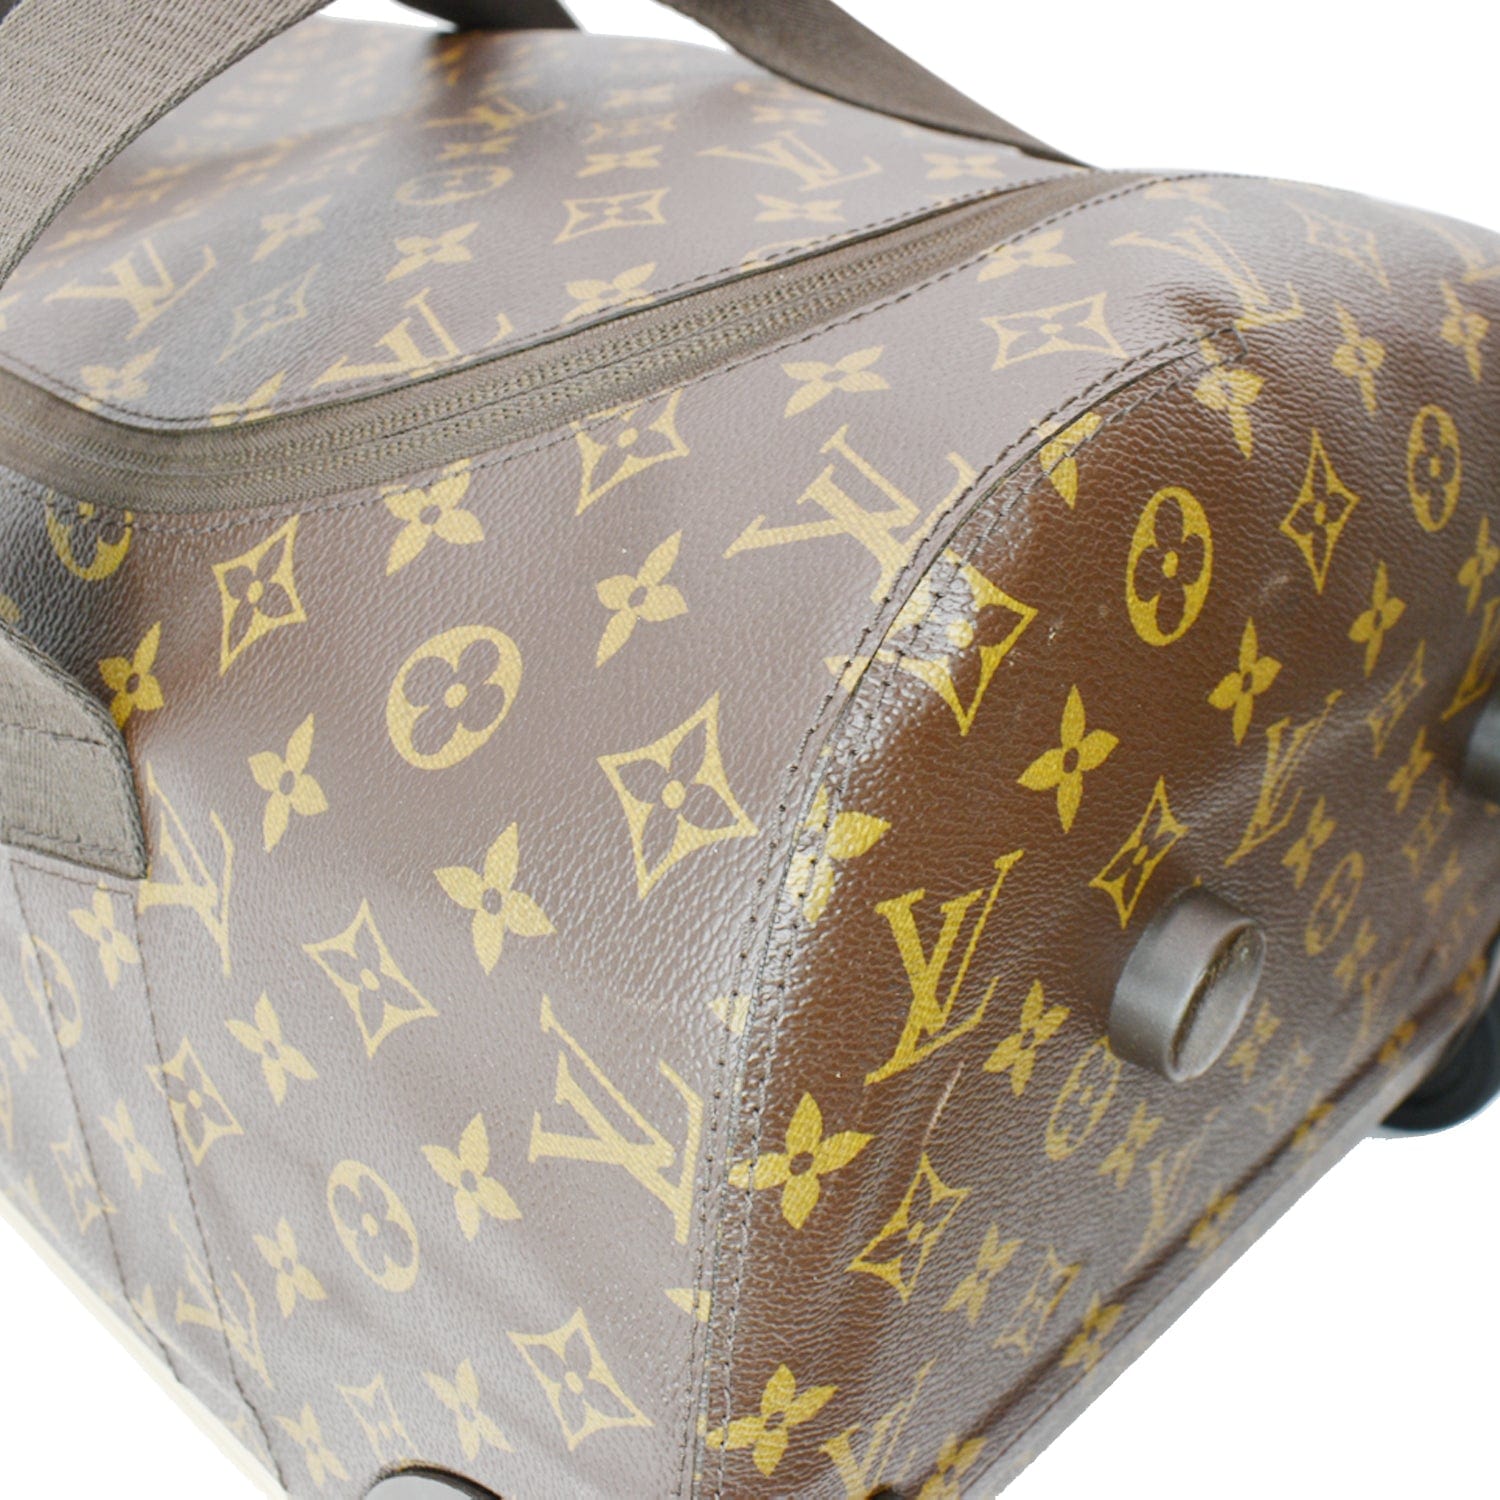 Vuitton weekend: hacemos las maletas para tres destinos inolvidables - Louis  Vuitton Horizon Soft 55: bolsas, maleta